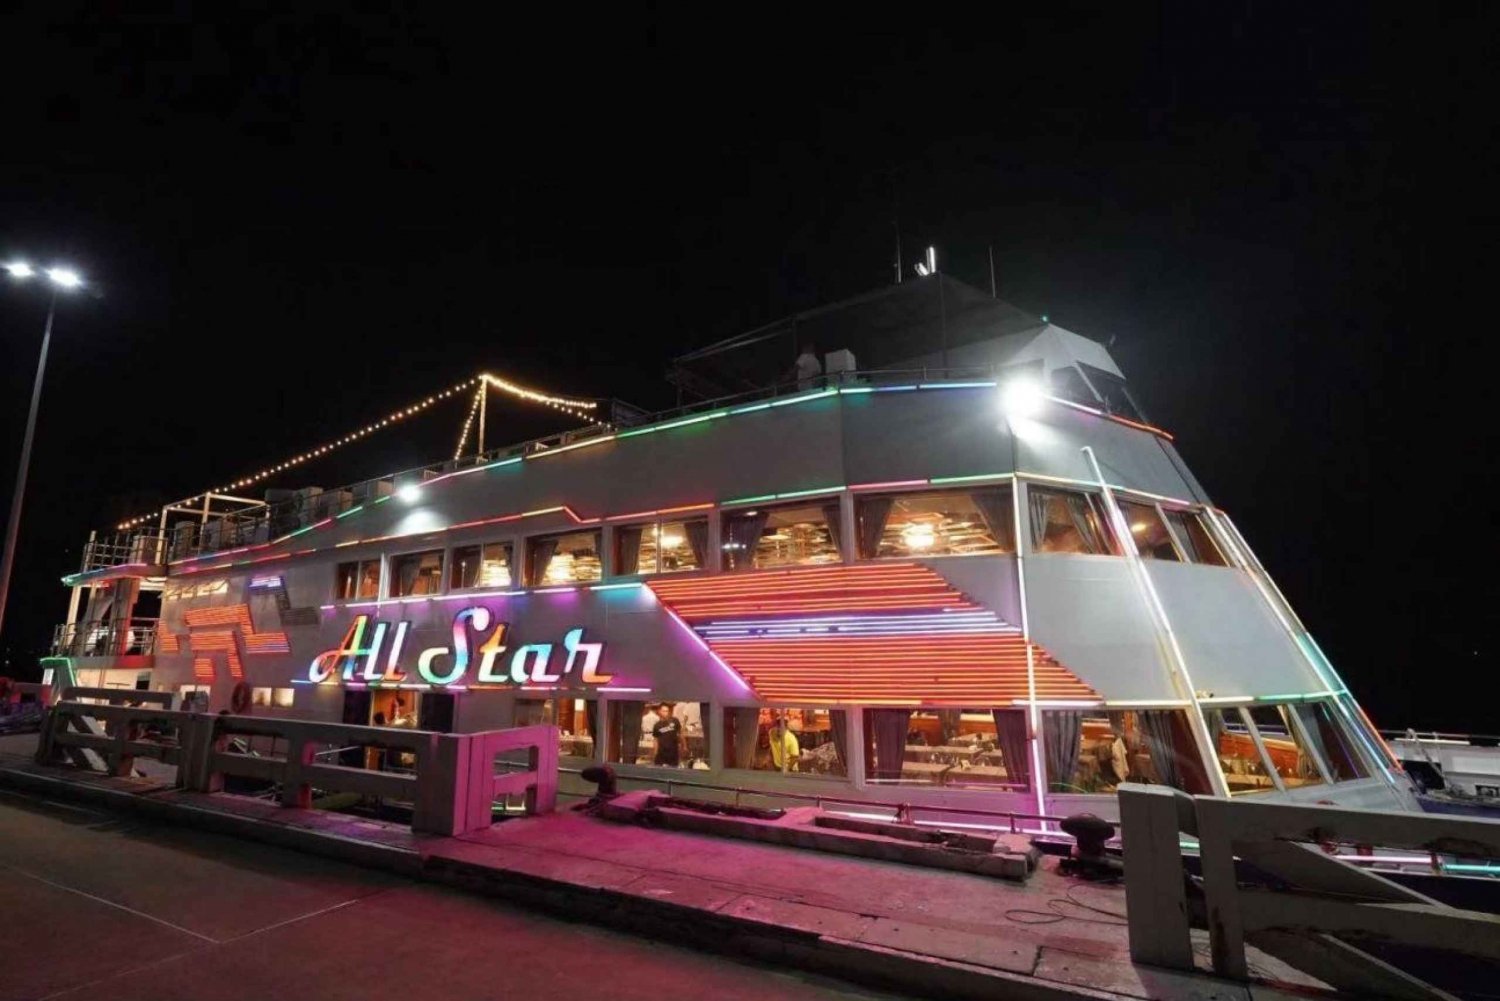 Pattaya: All Star Dinner Cruise, Cabaret Show & Bierbuffet